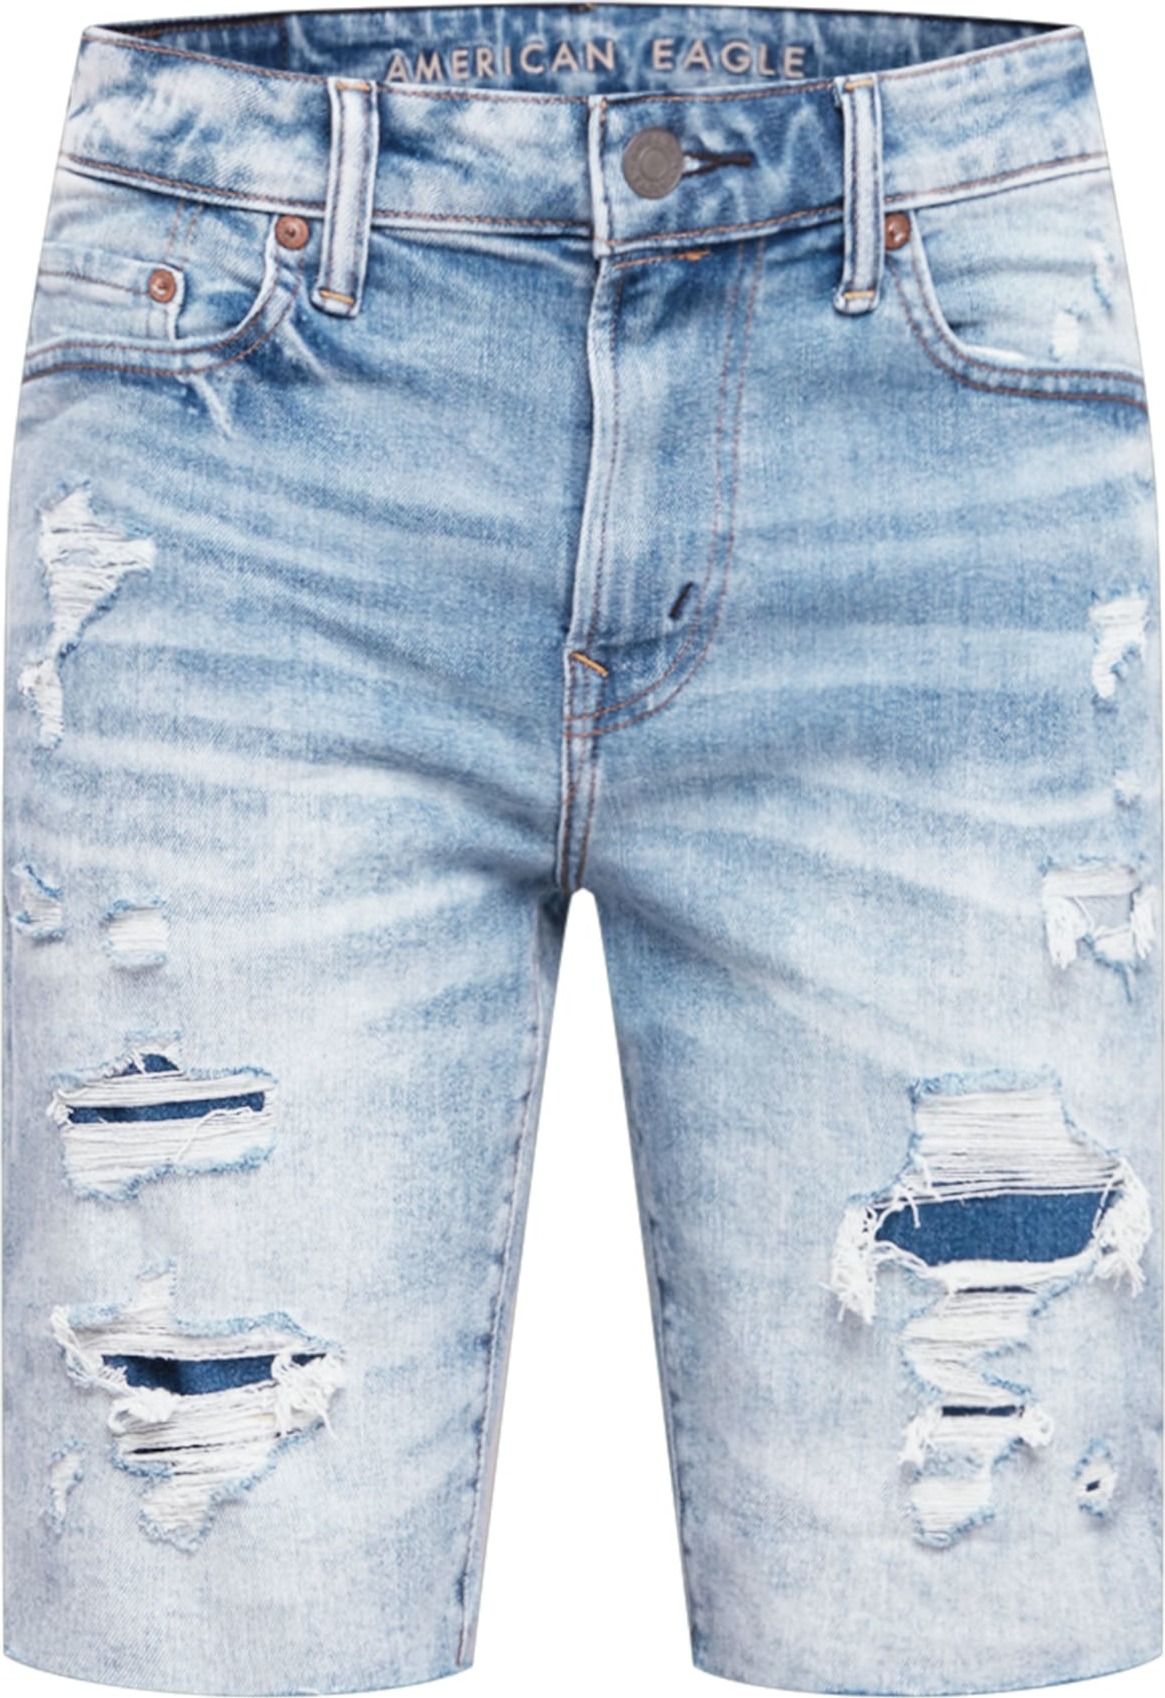 American Eagle Jeans modrá džínovina